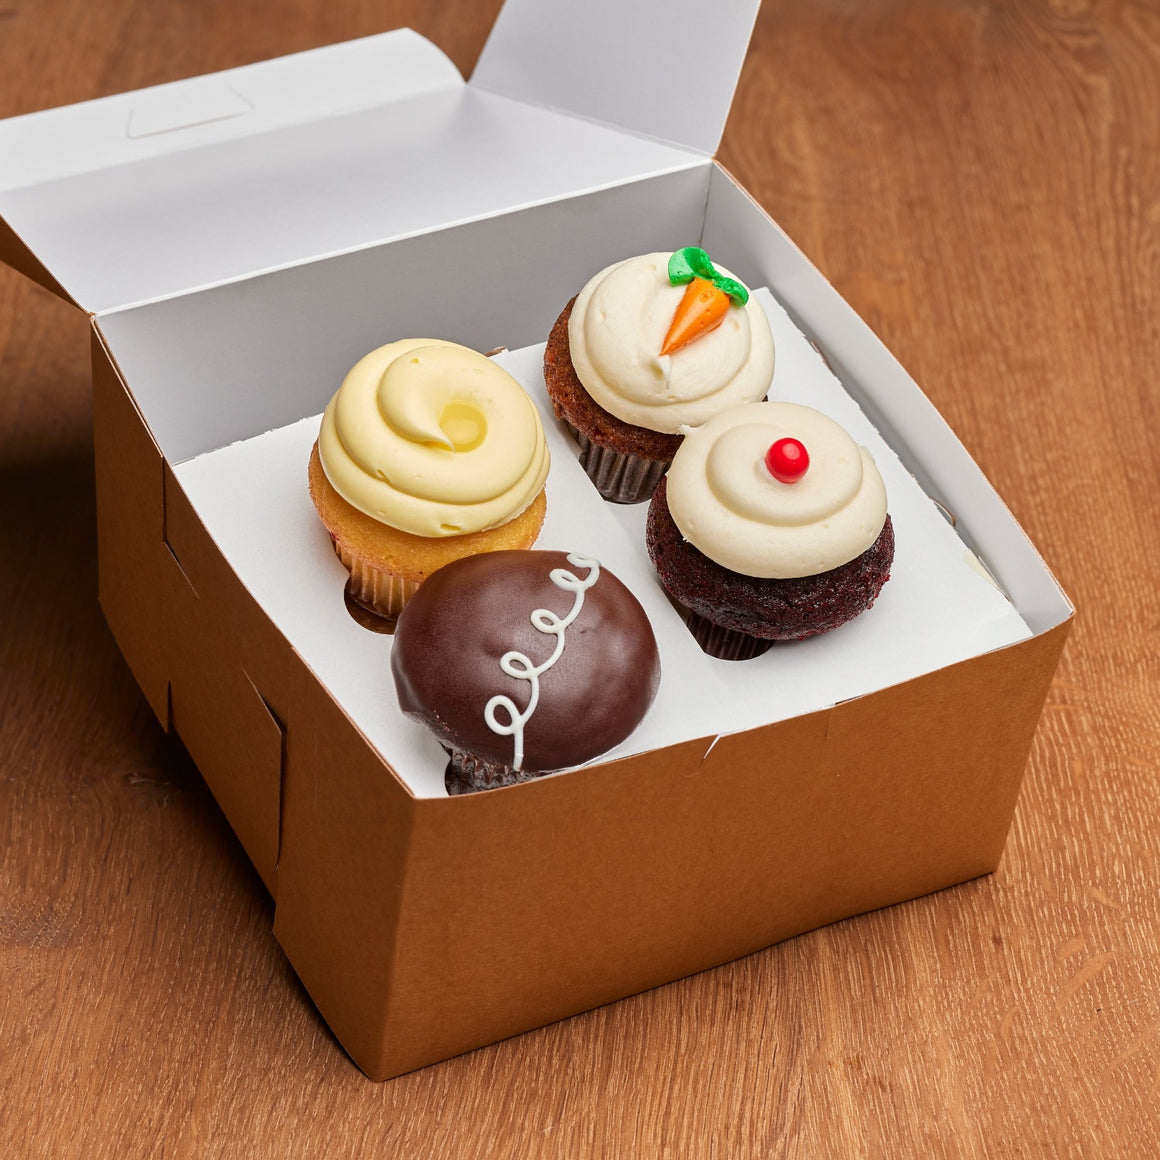 Fan Favorite Cupcake Box from Noe Valley Bakery